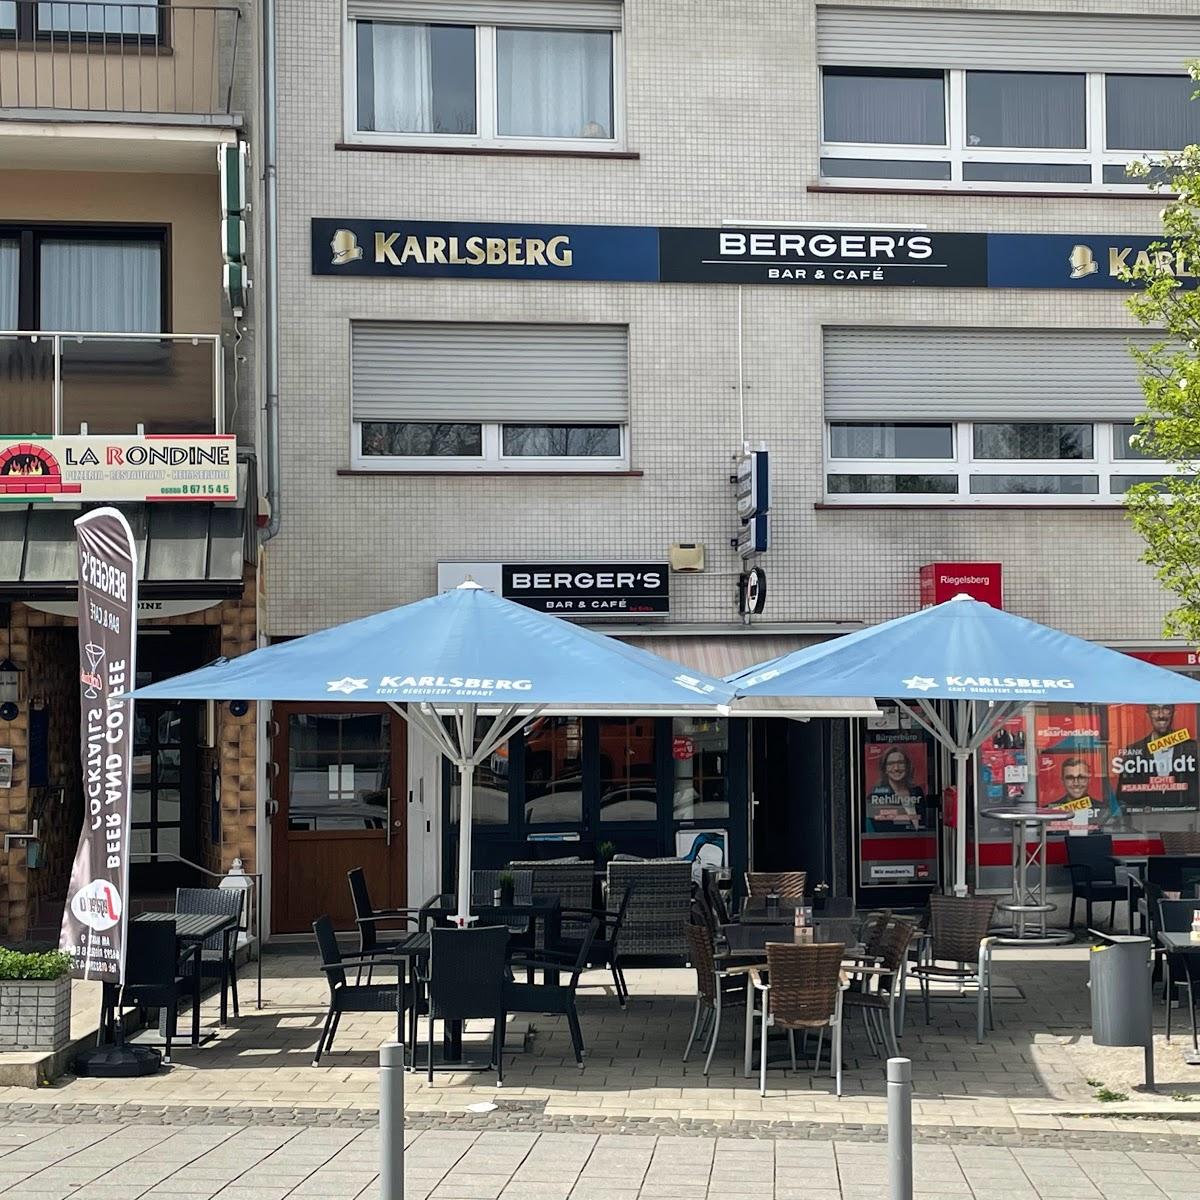 Restaurant "Bergers Cafe und Bar" in Riegelsberg